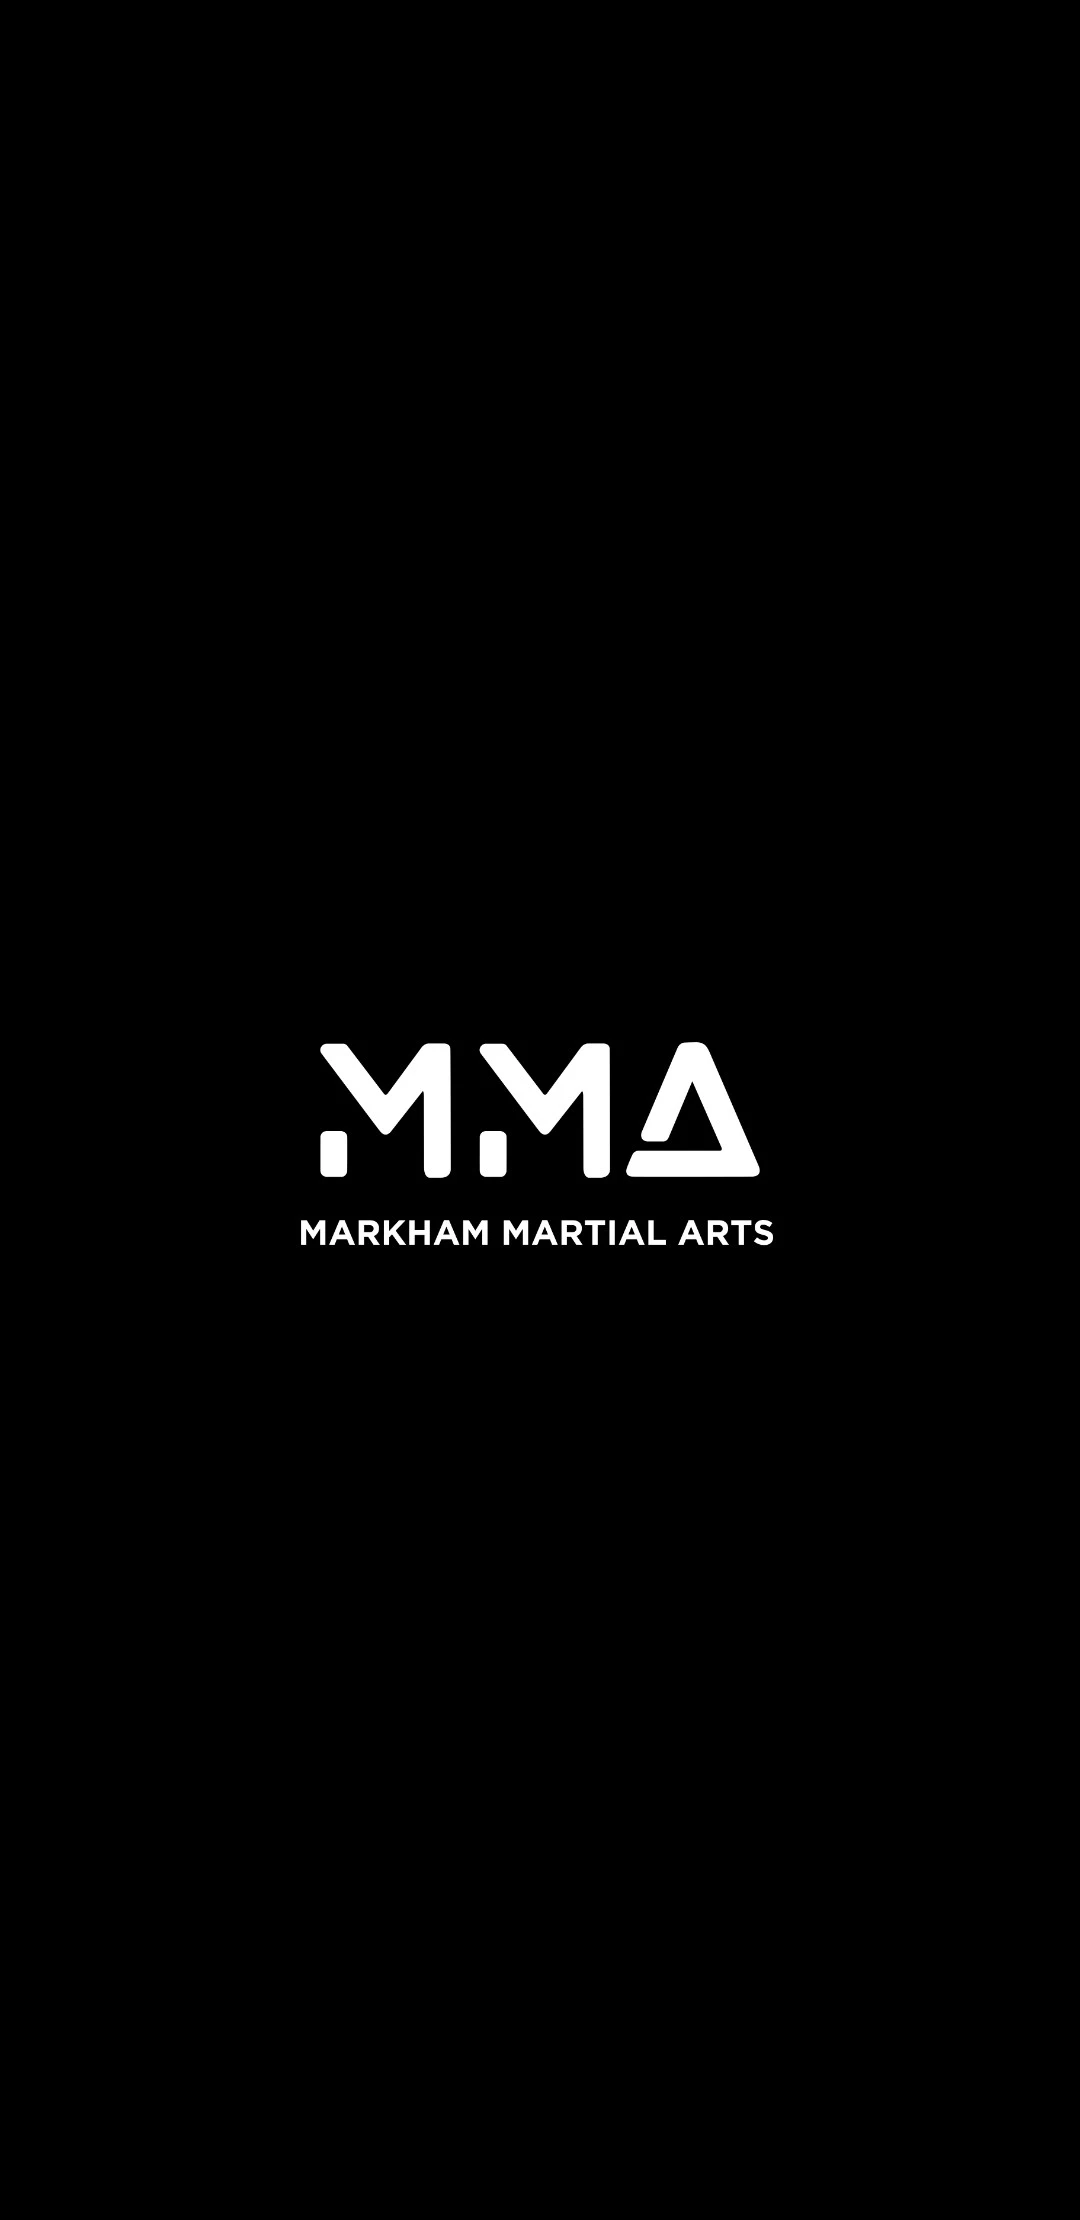 MARKHAM MARTIAL ARTS INC